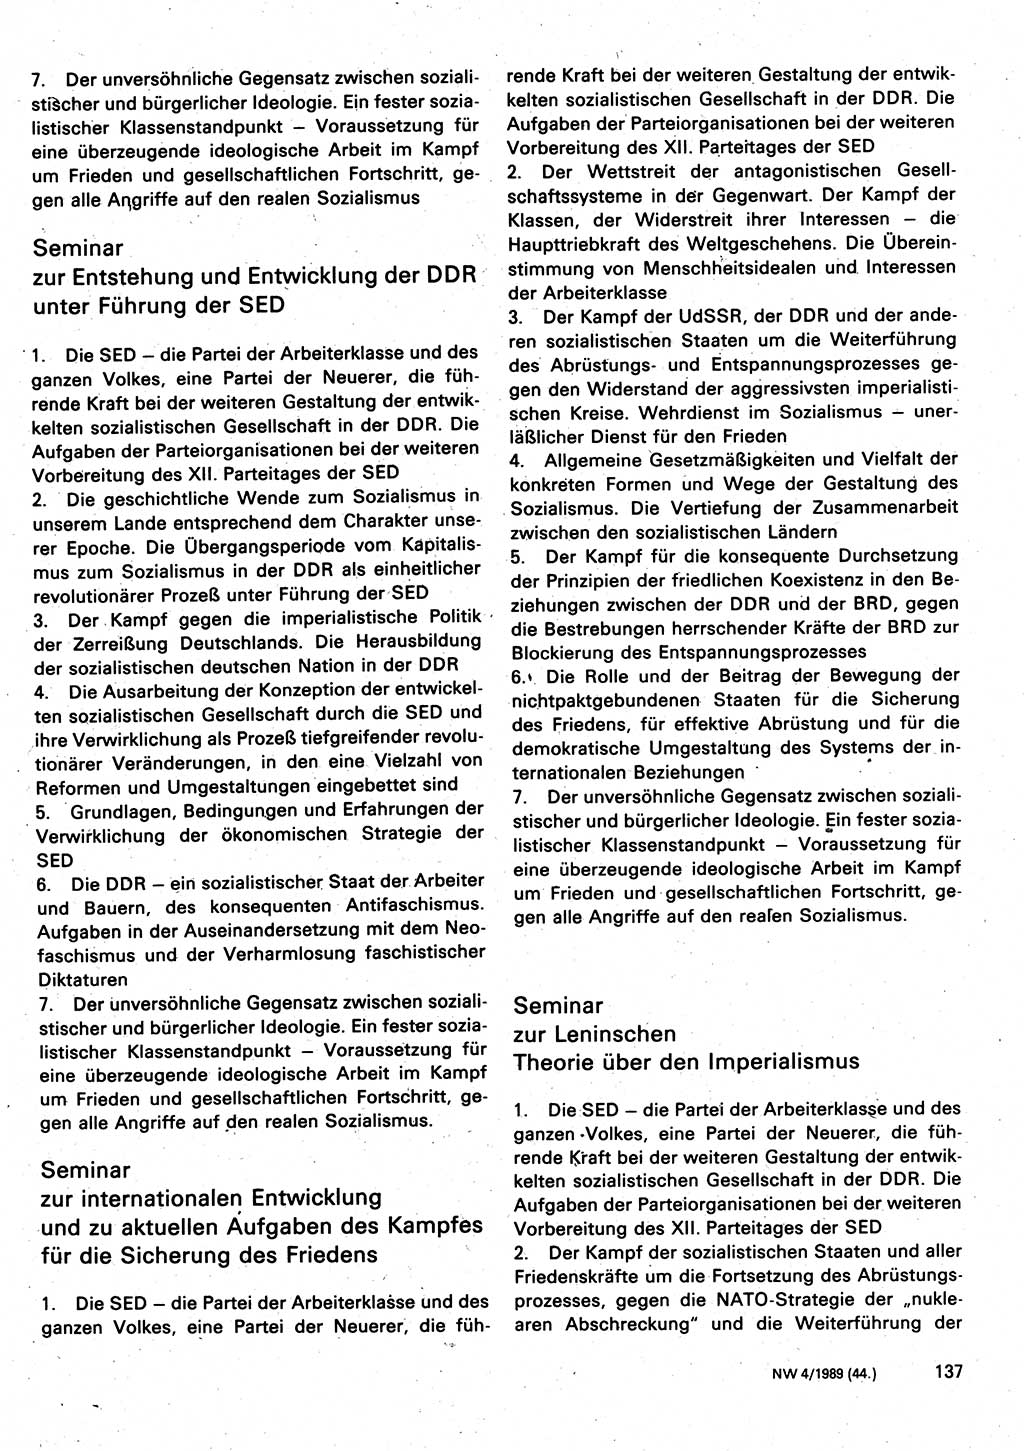 Neuer Weg (NW), Organ des Zentralkomitees (ZK) der SED (Sozialistische Einheitspartei Deutschlands) für Fragen des Parteilebens, 44. Jahrgang [Deutsche Demokratische Republik (DDR)] 1989, Seite 137 (NW ZK SED DDR 1989, S. 137)